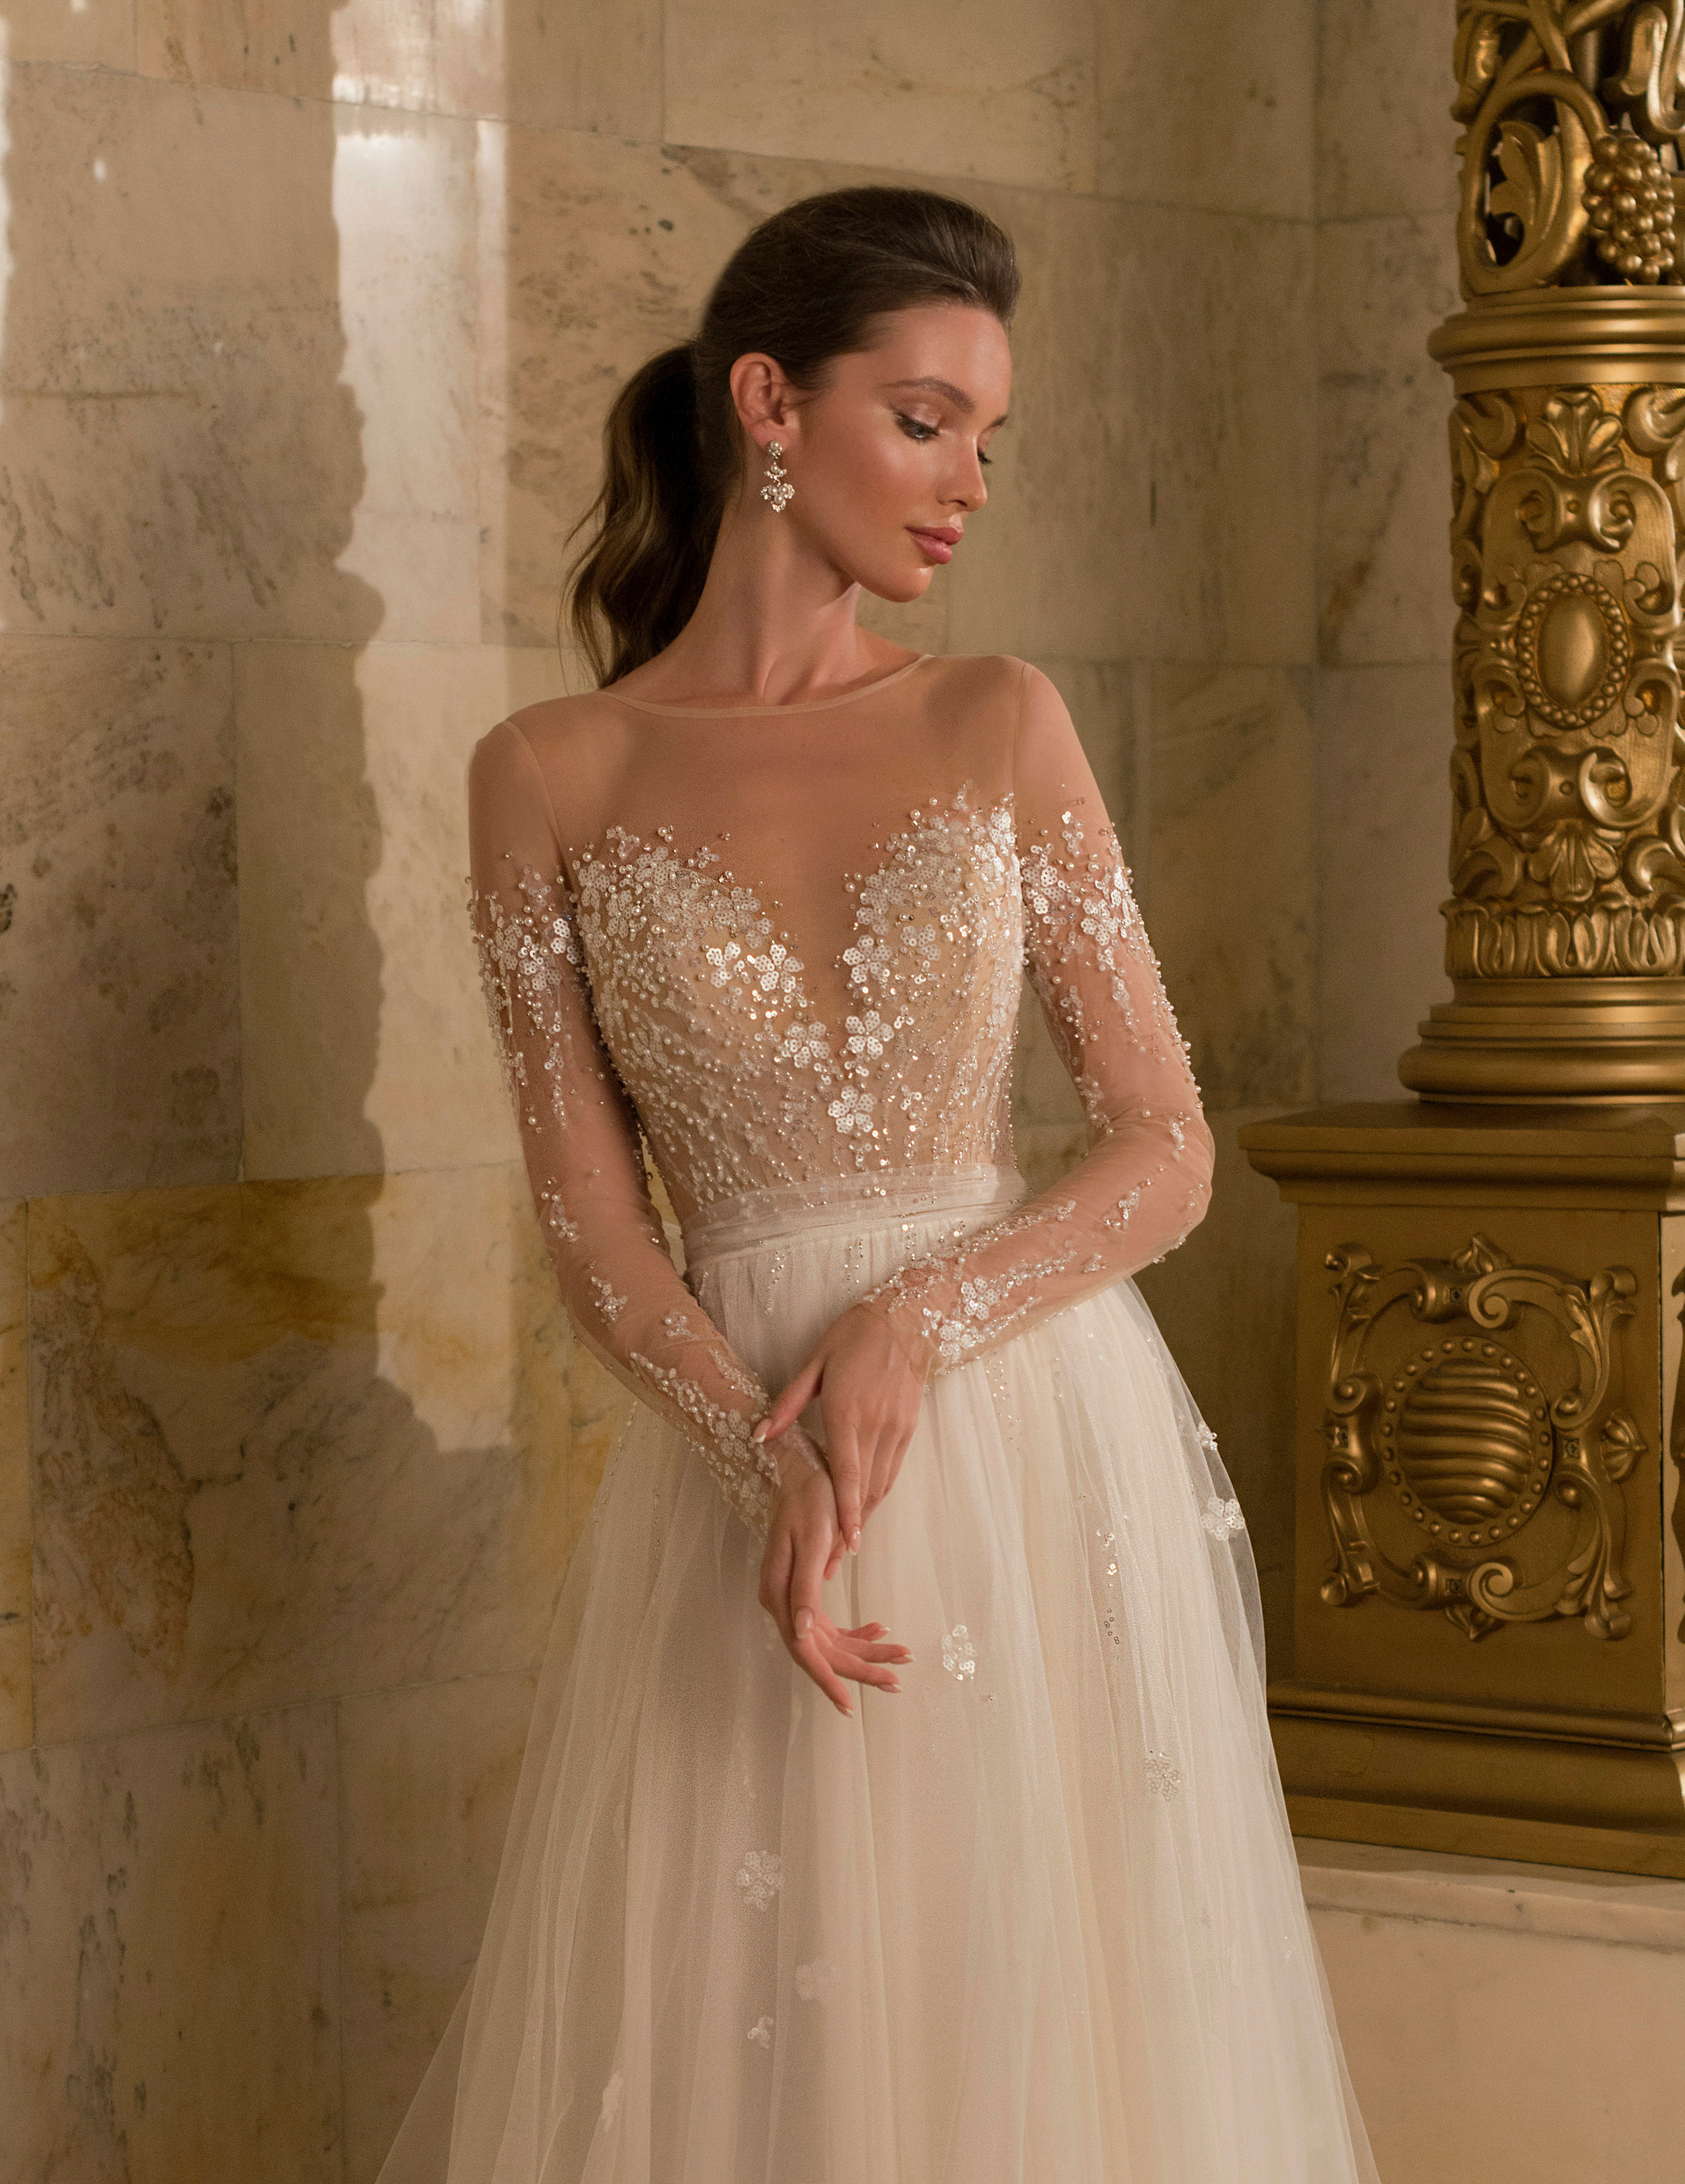 Купить свадебное платье «Татиана» Мэрри Марк из коллекции Бриллиант 2022 года в салоне «Мэри Трюфель»